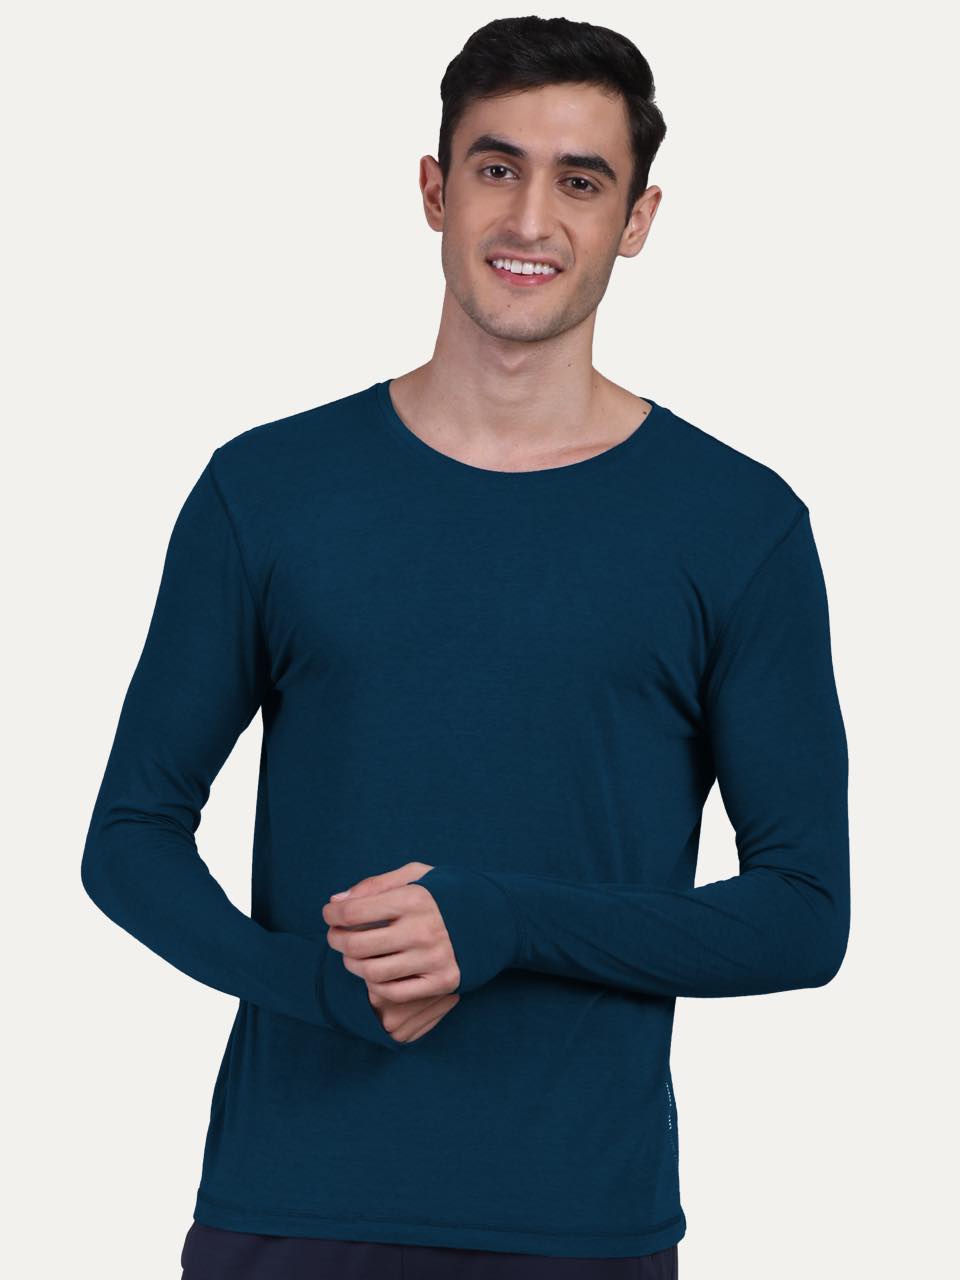 Men's Organic Bamboo Skins (Full Sleeves-Undershirt, Loungewear, Sleepwear) - Pack of 1